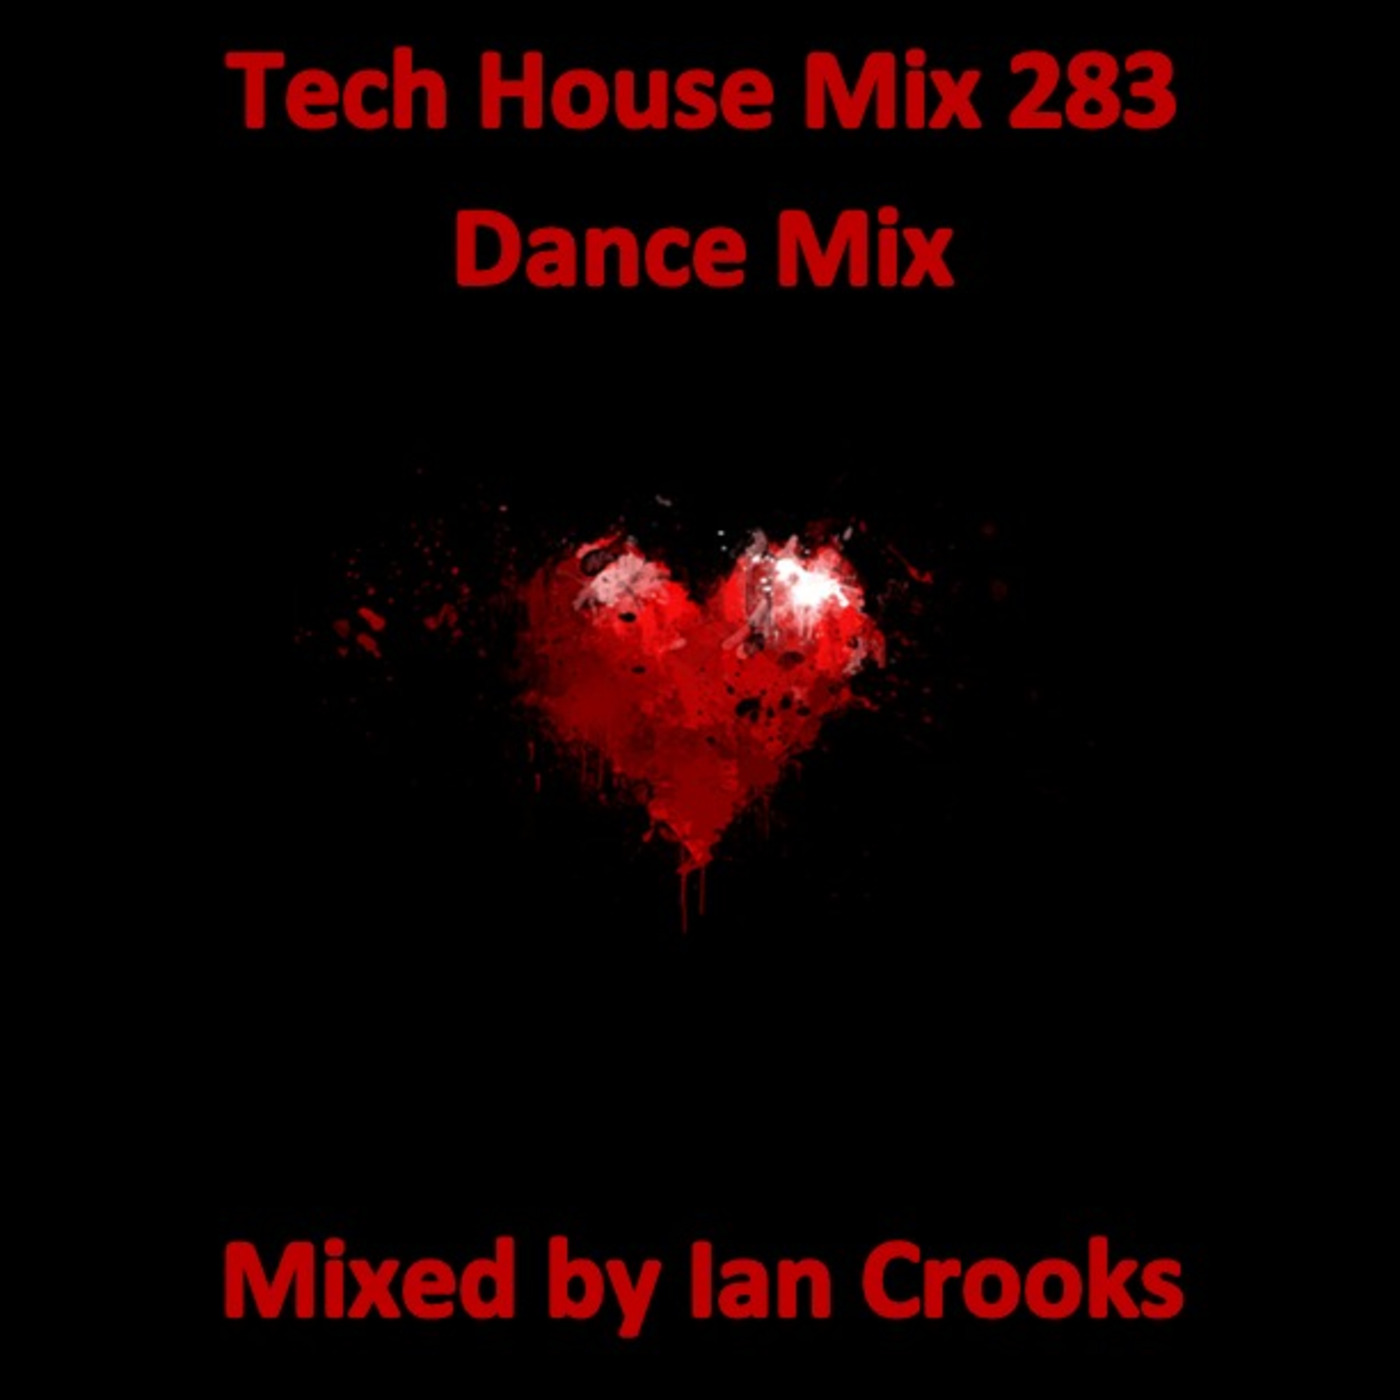 Ian Crooks Mix 283 (Dance Mix)